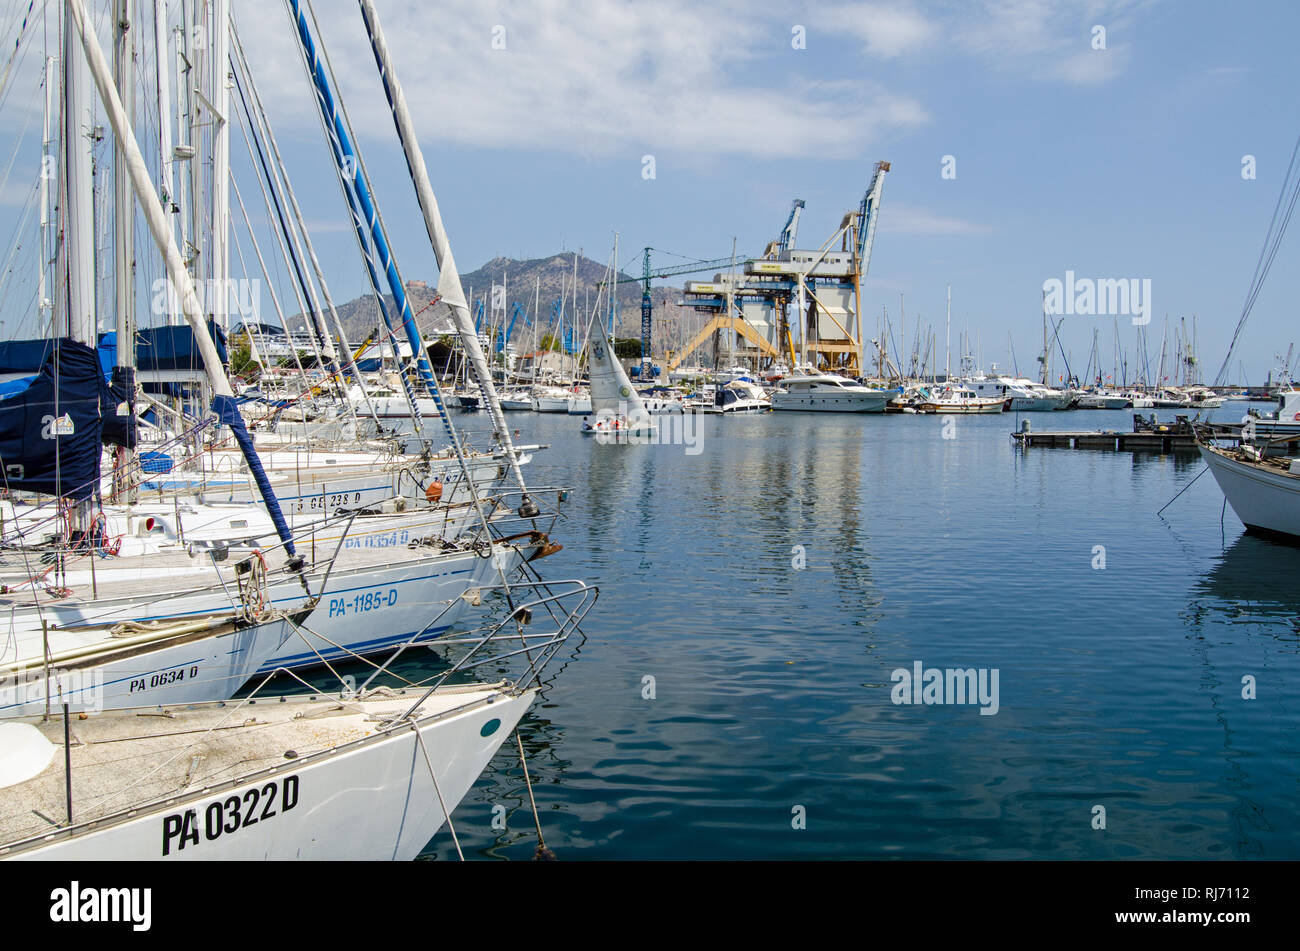 Palerme, Italie - le 18 juin 2018 : yachts dans la marina de Palerme, La Cala - La Crique sur un matin d'été ensoleillé. Banque D'Images